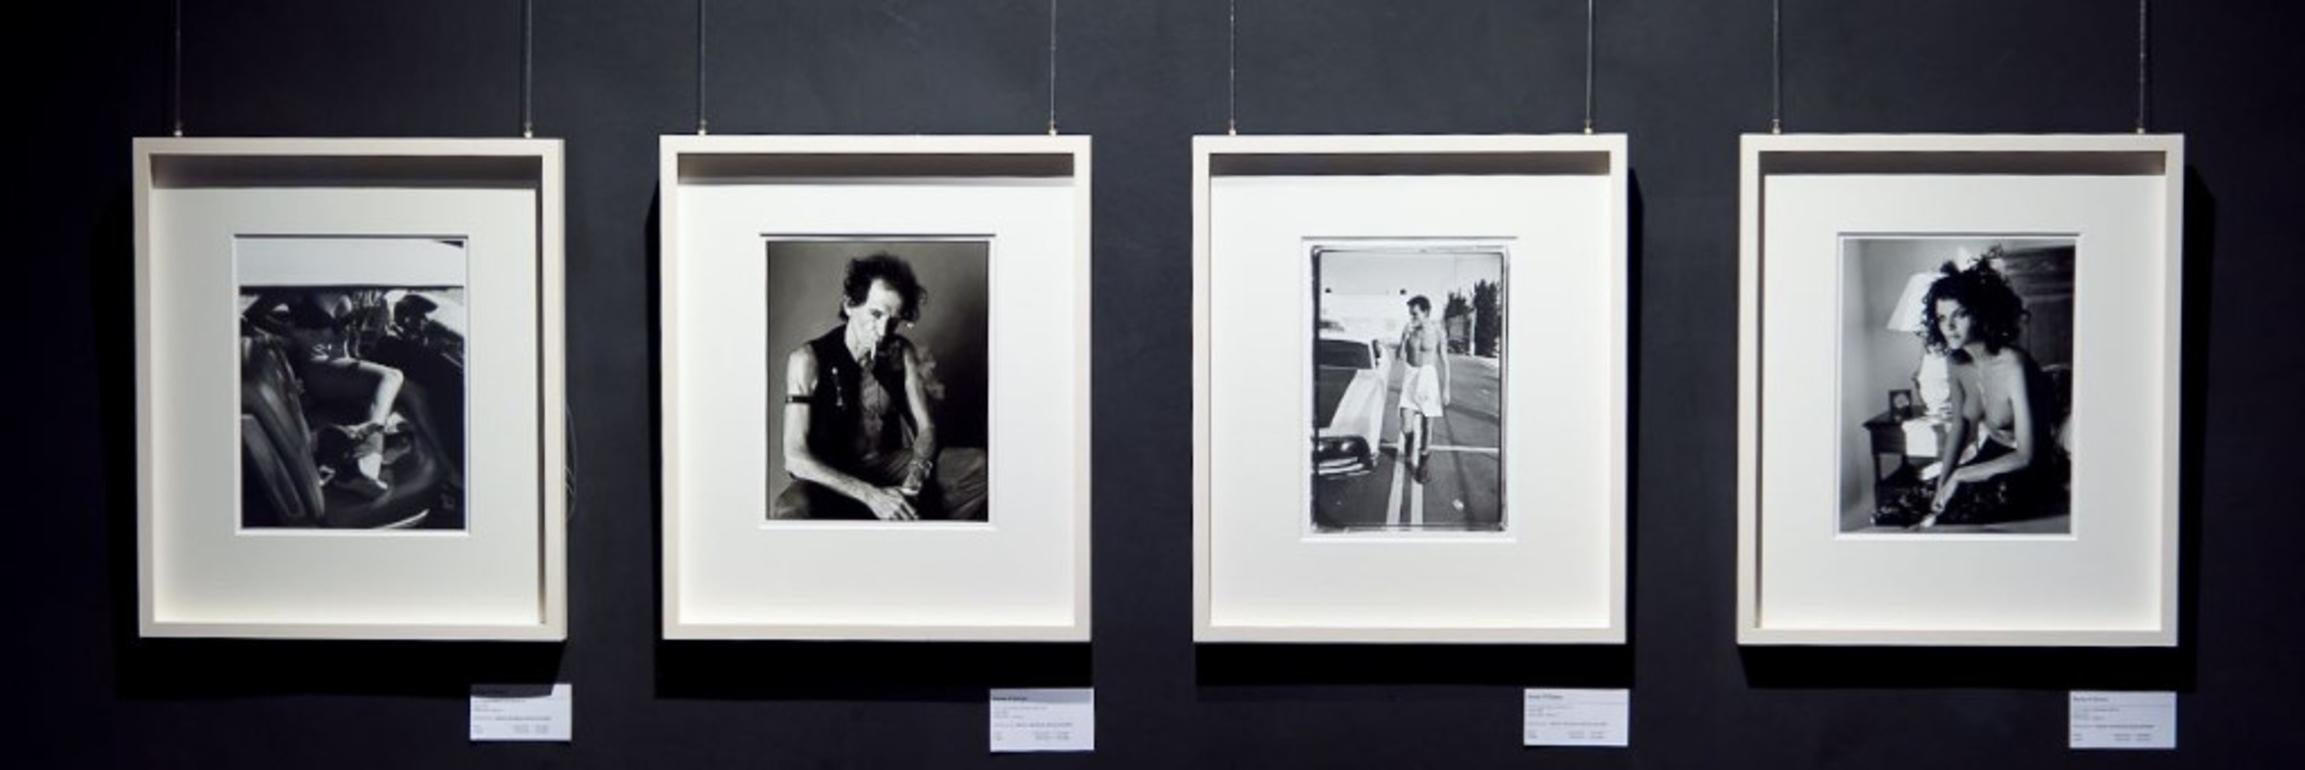 Keith Richards Rauchen – Porträt des Rockstars und des Rolling Stones-Mitglieds – Photograph von Sante D´ Orazio